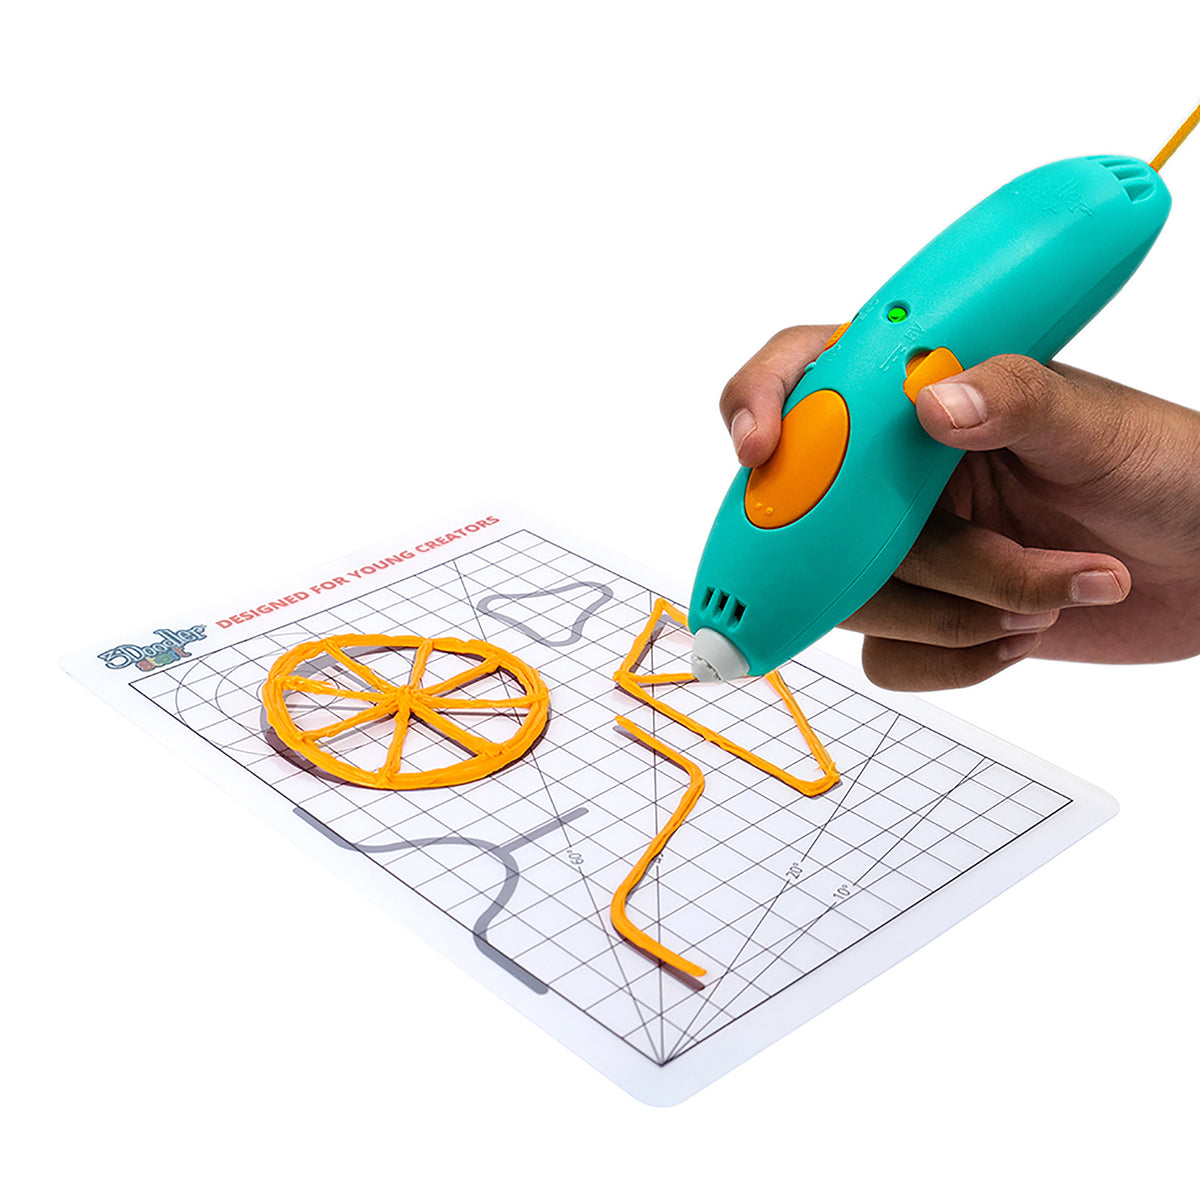 3Doodler Start Essentials 3D Printing Pen Set - (1 x Start 3D Pens